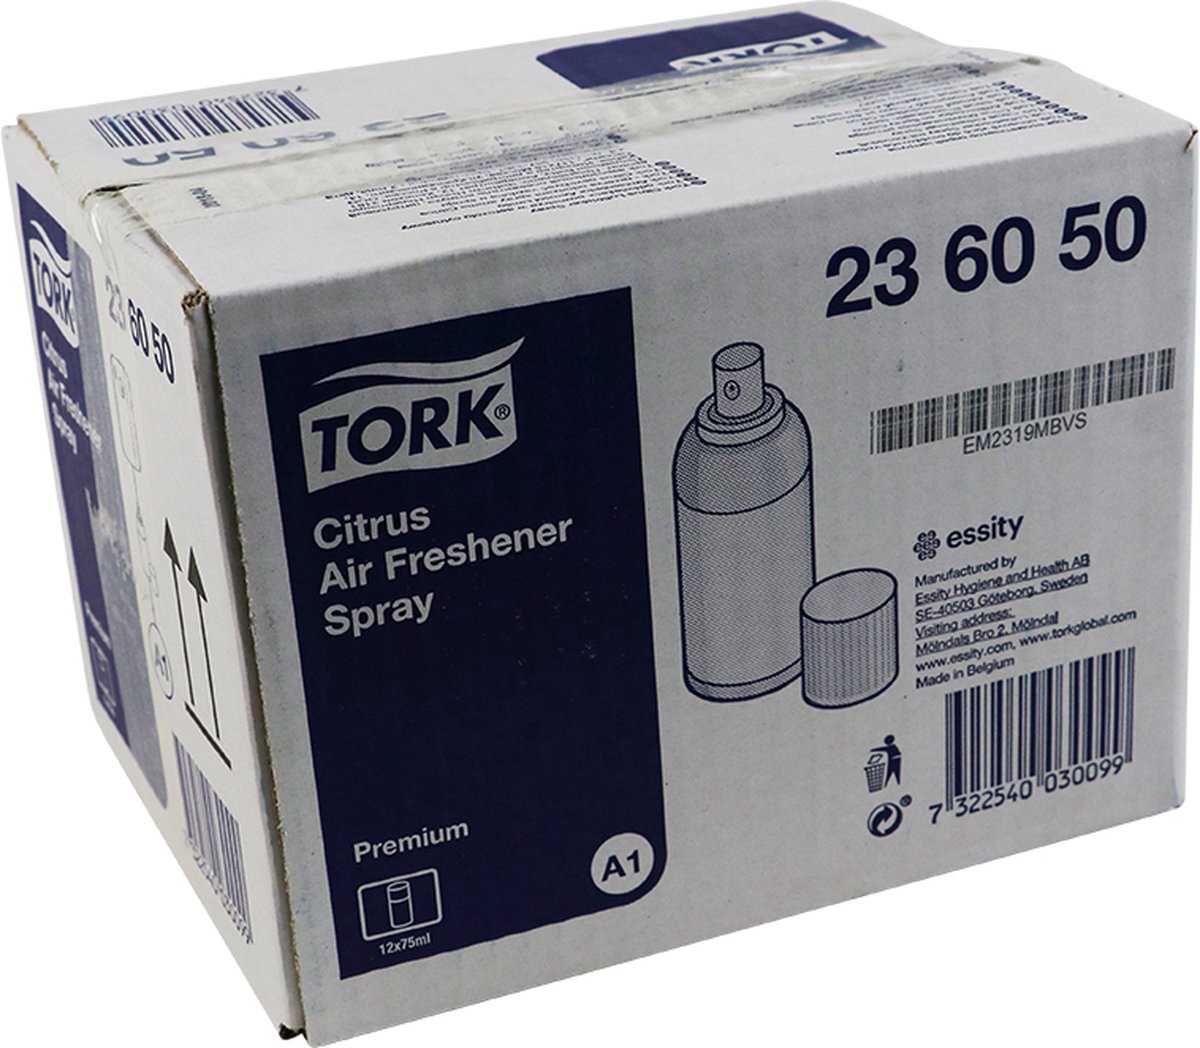 Voordeelverpakking 3 X Tork Luchtverfrisser Spray met Citrusgeur A1, aerosol, 12x75ml (236050)